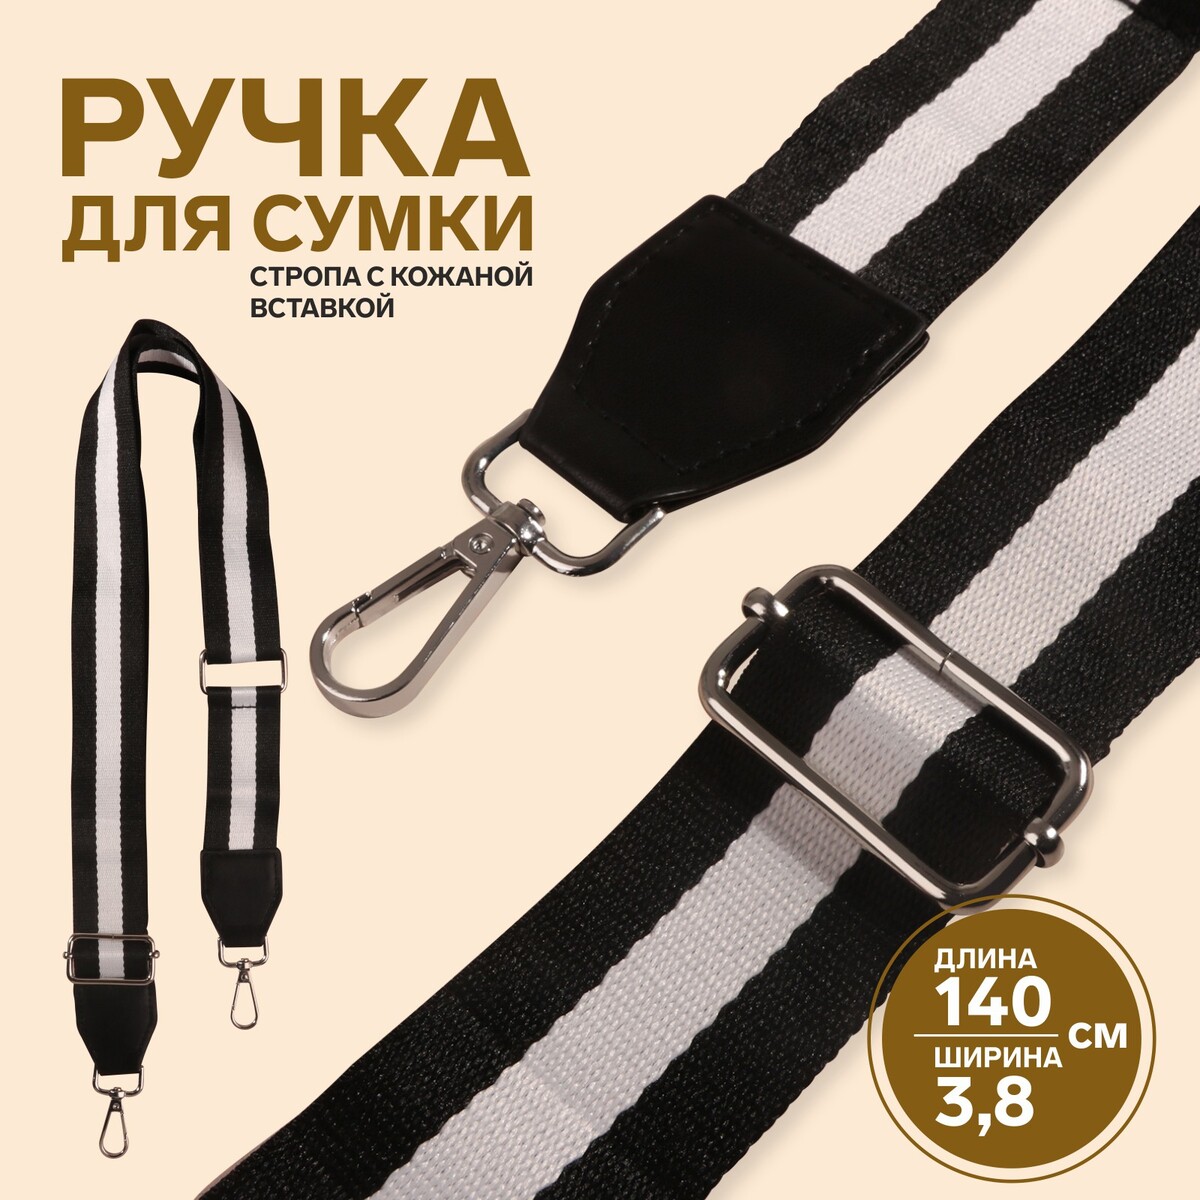 Ручка для сумки, стропа с кожаной вставкой, 140 × 3,8 см, цвет черный/белый